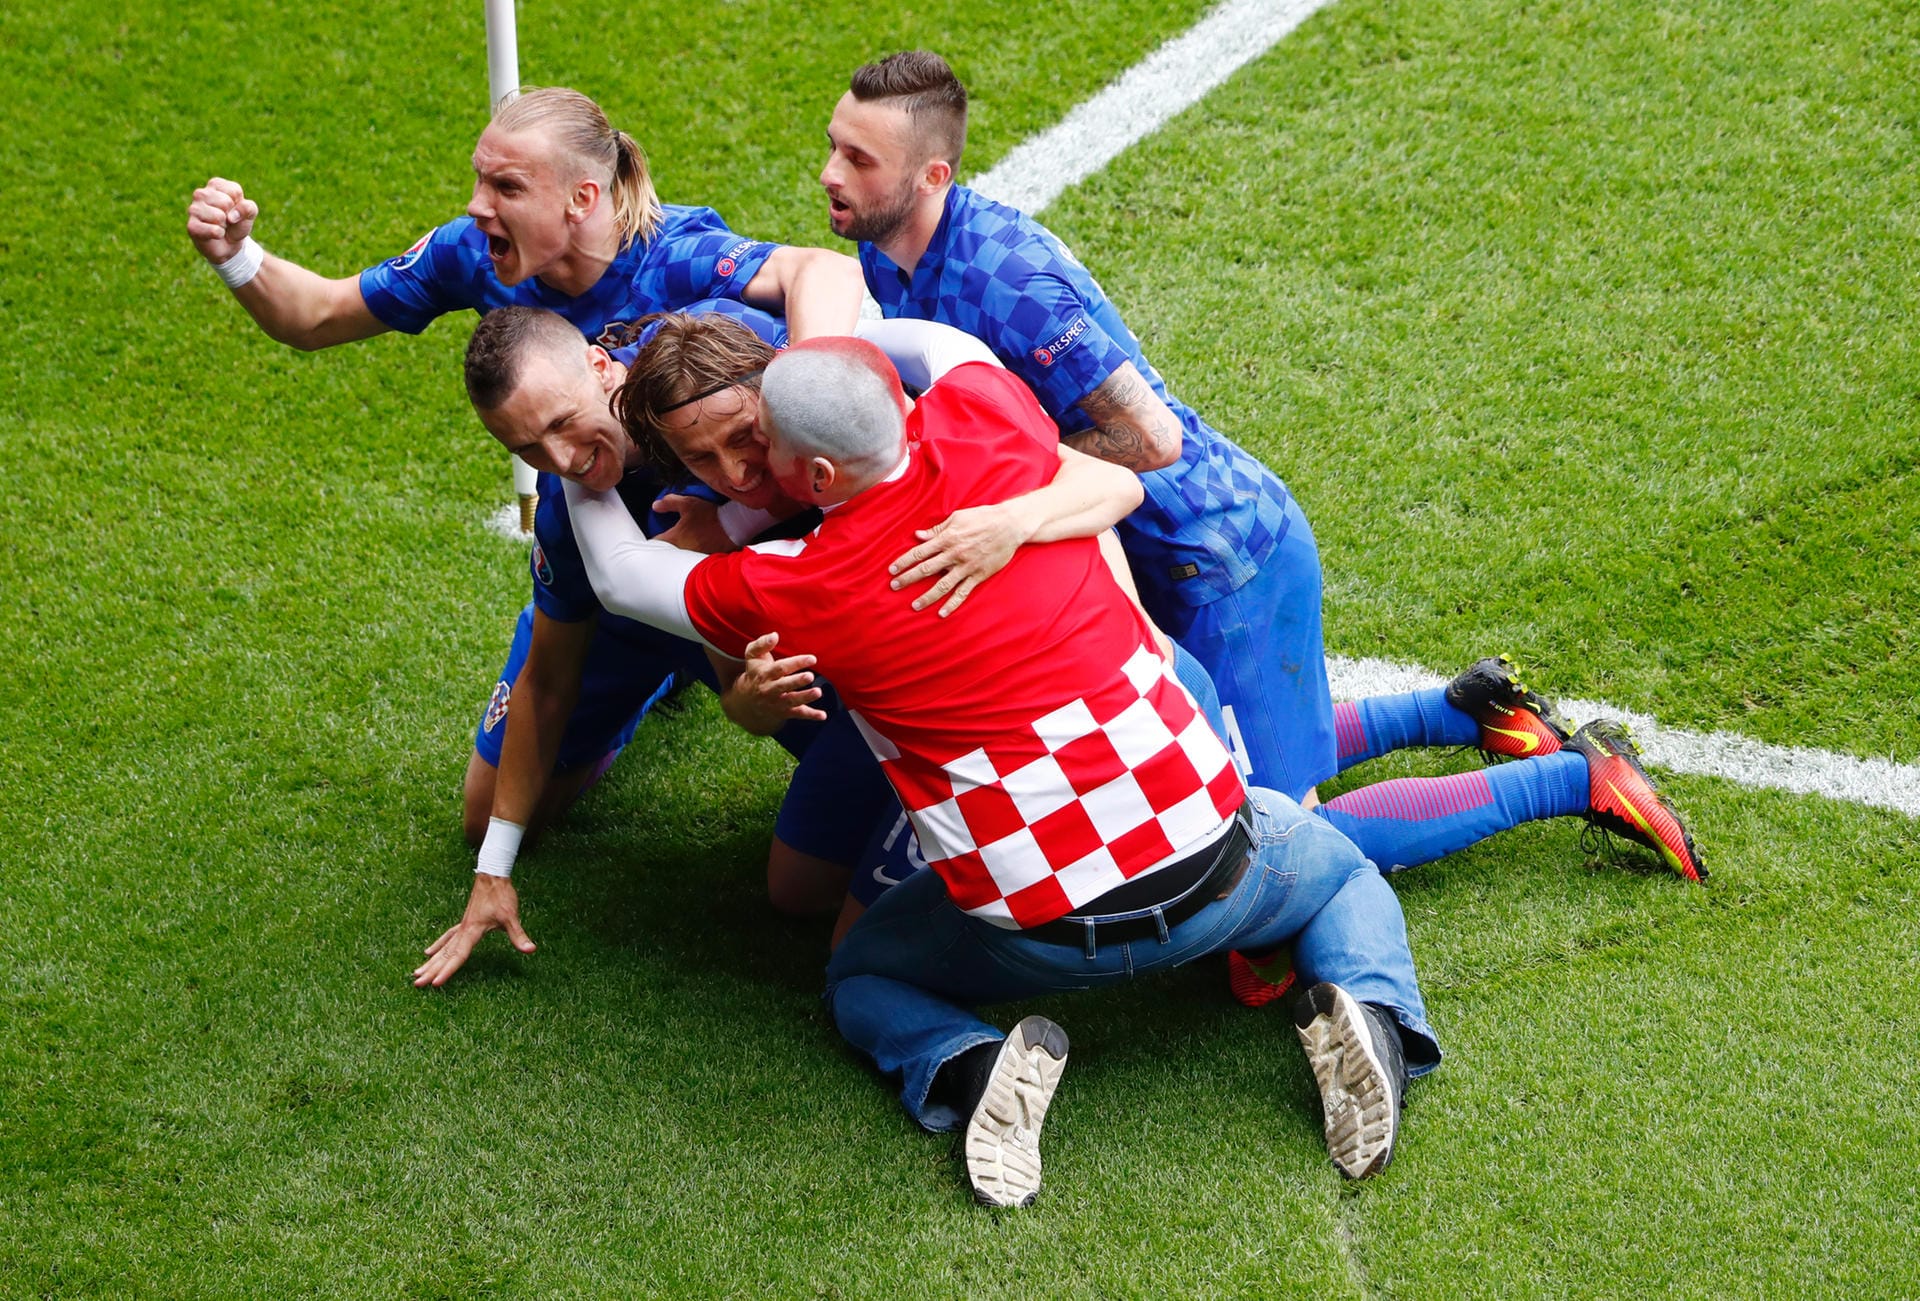 ... der Mittelfeldspieler von Champions-League-Sieger Real Madrid darf sich für seinen sehenswerten Treffer von seinen Mitspielern und einem kroatischen Fan herzen lassen. Mit Recht: Sein Tor bleibt das einzige der Partie, Kroatien besiegt die Türkei mit 1:0 (1:0).